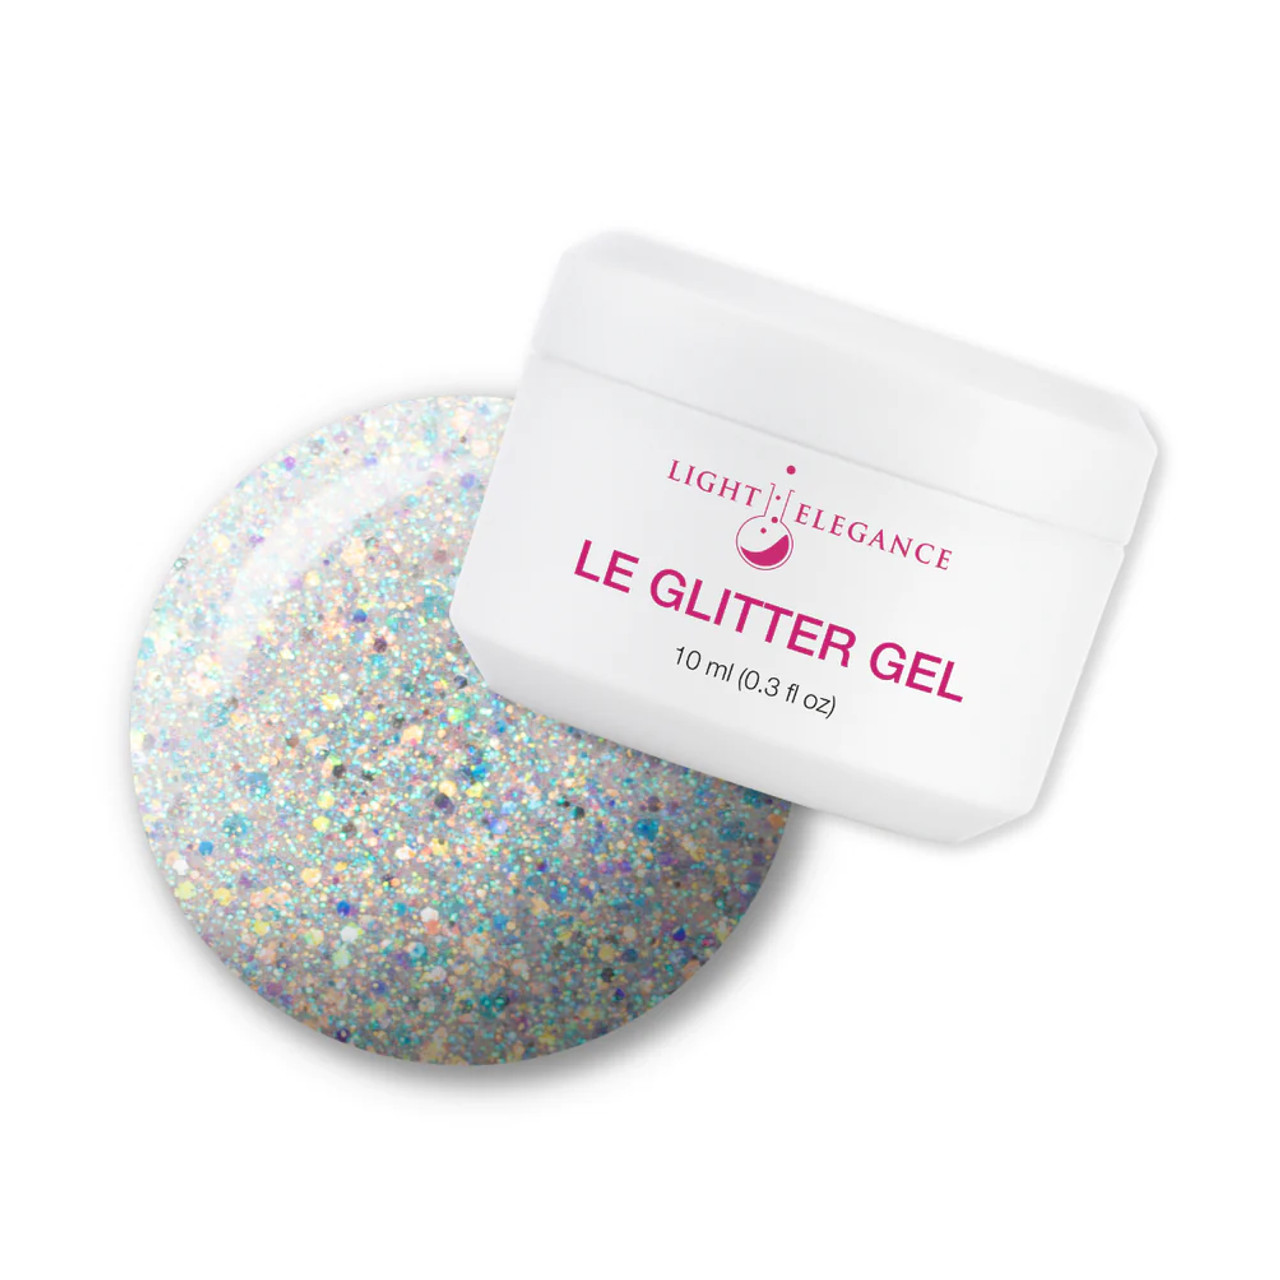 Light Elegance UV/LED Glitter Gel Ice Cream, You Scream - 10 ml